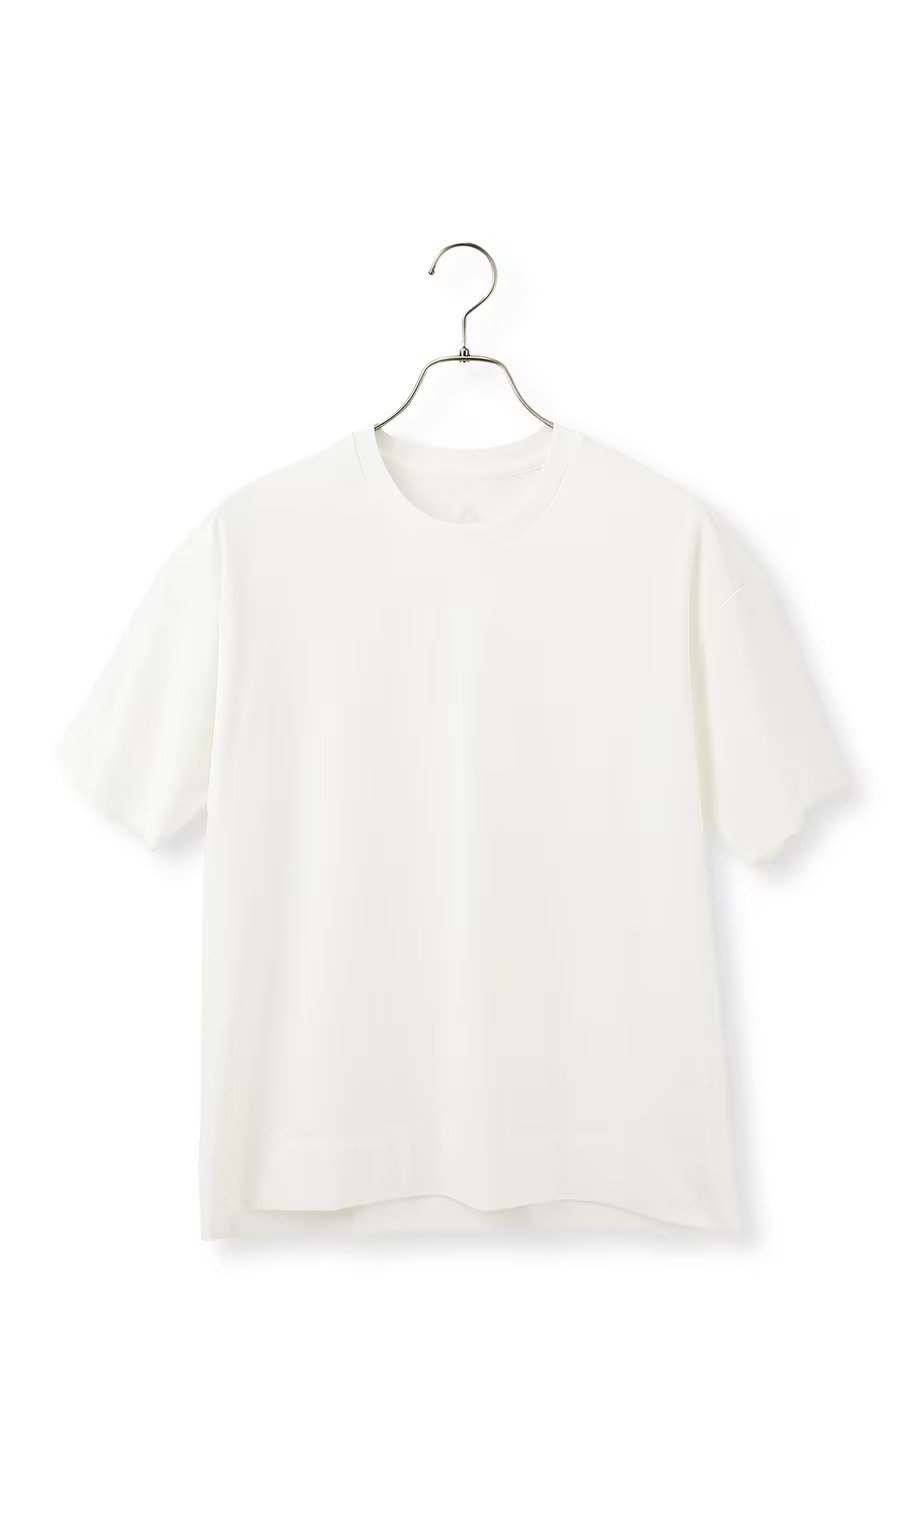 NEOCOLDレイヤードTシャツ【すごシャツ】【COOL CONTACT】